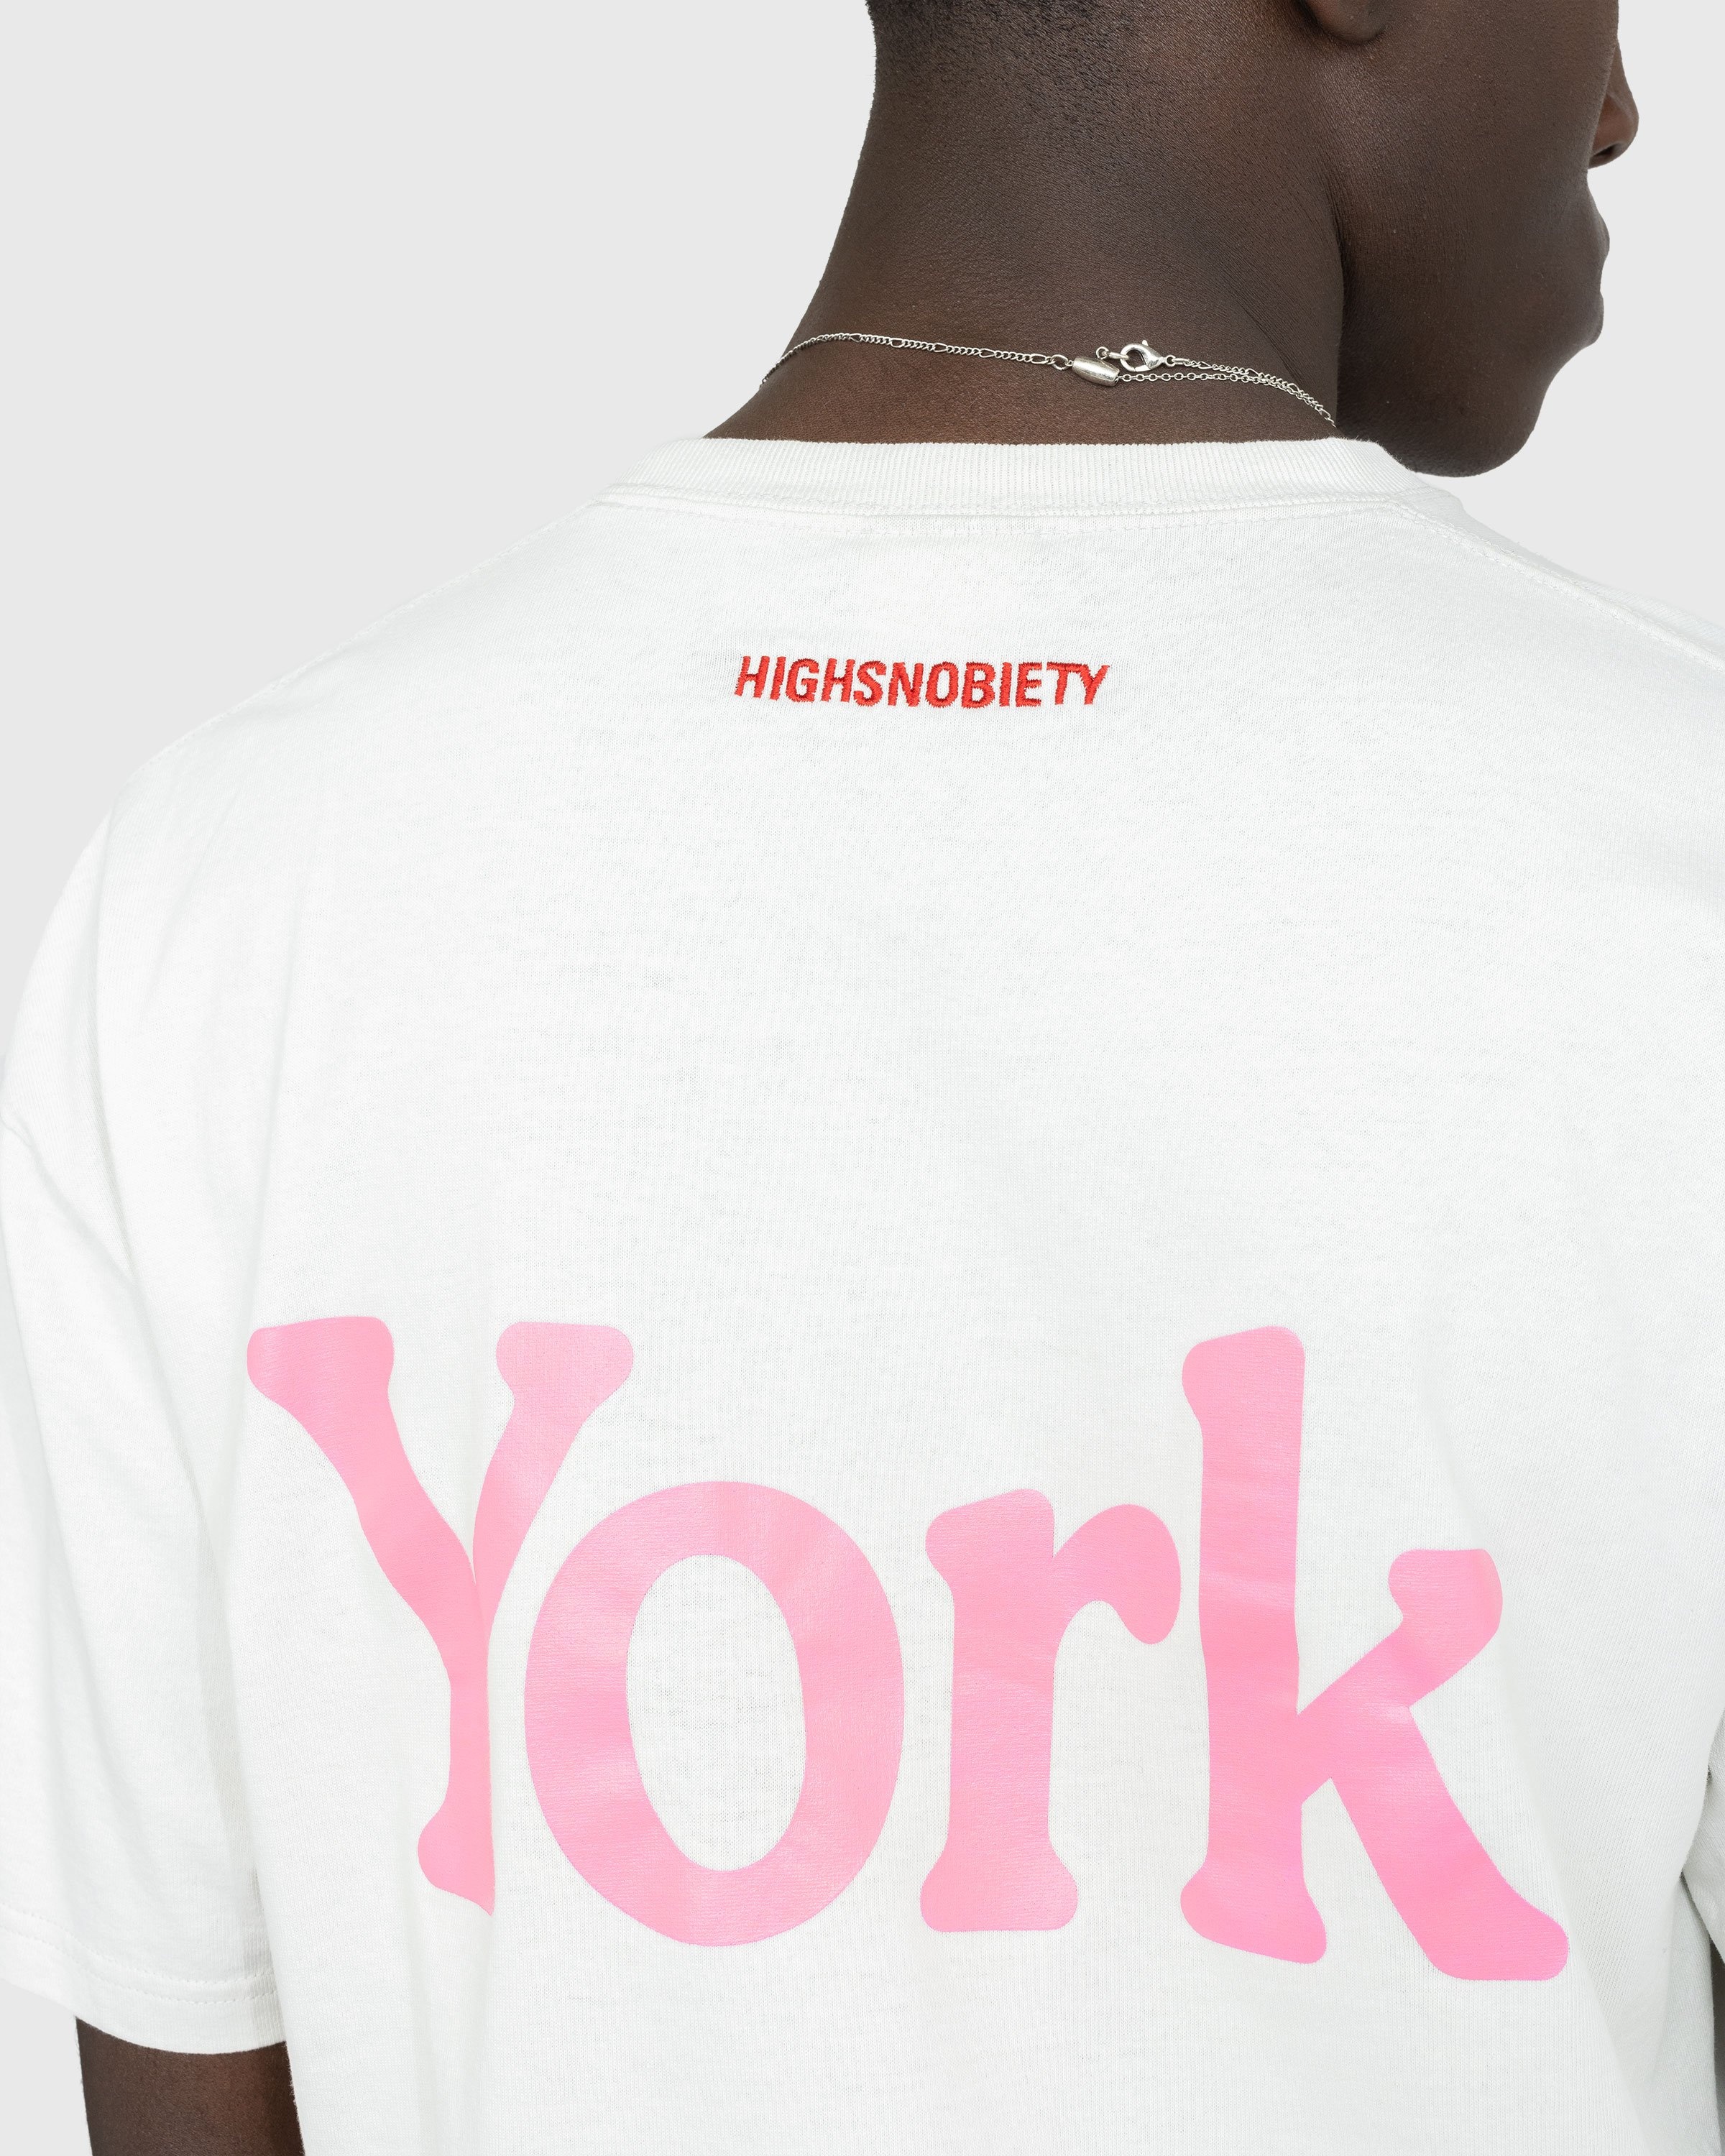 Highsnobiety – Neu York T-Shirt White - T-shirts - Grey - Image 5